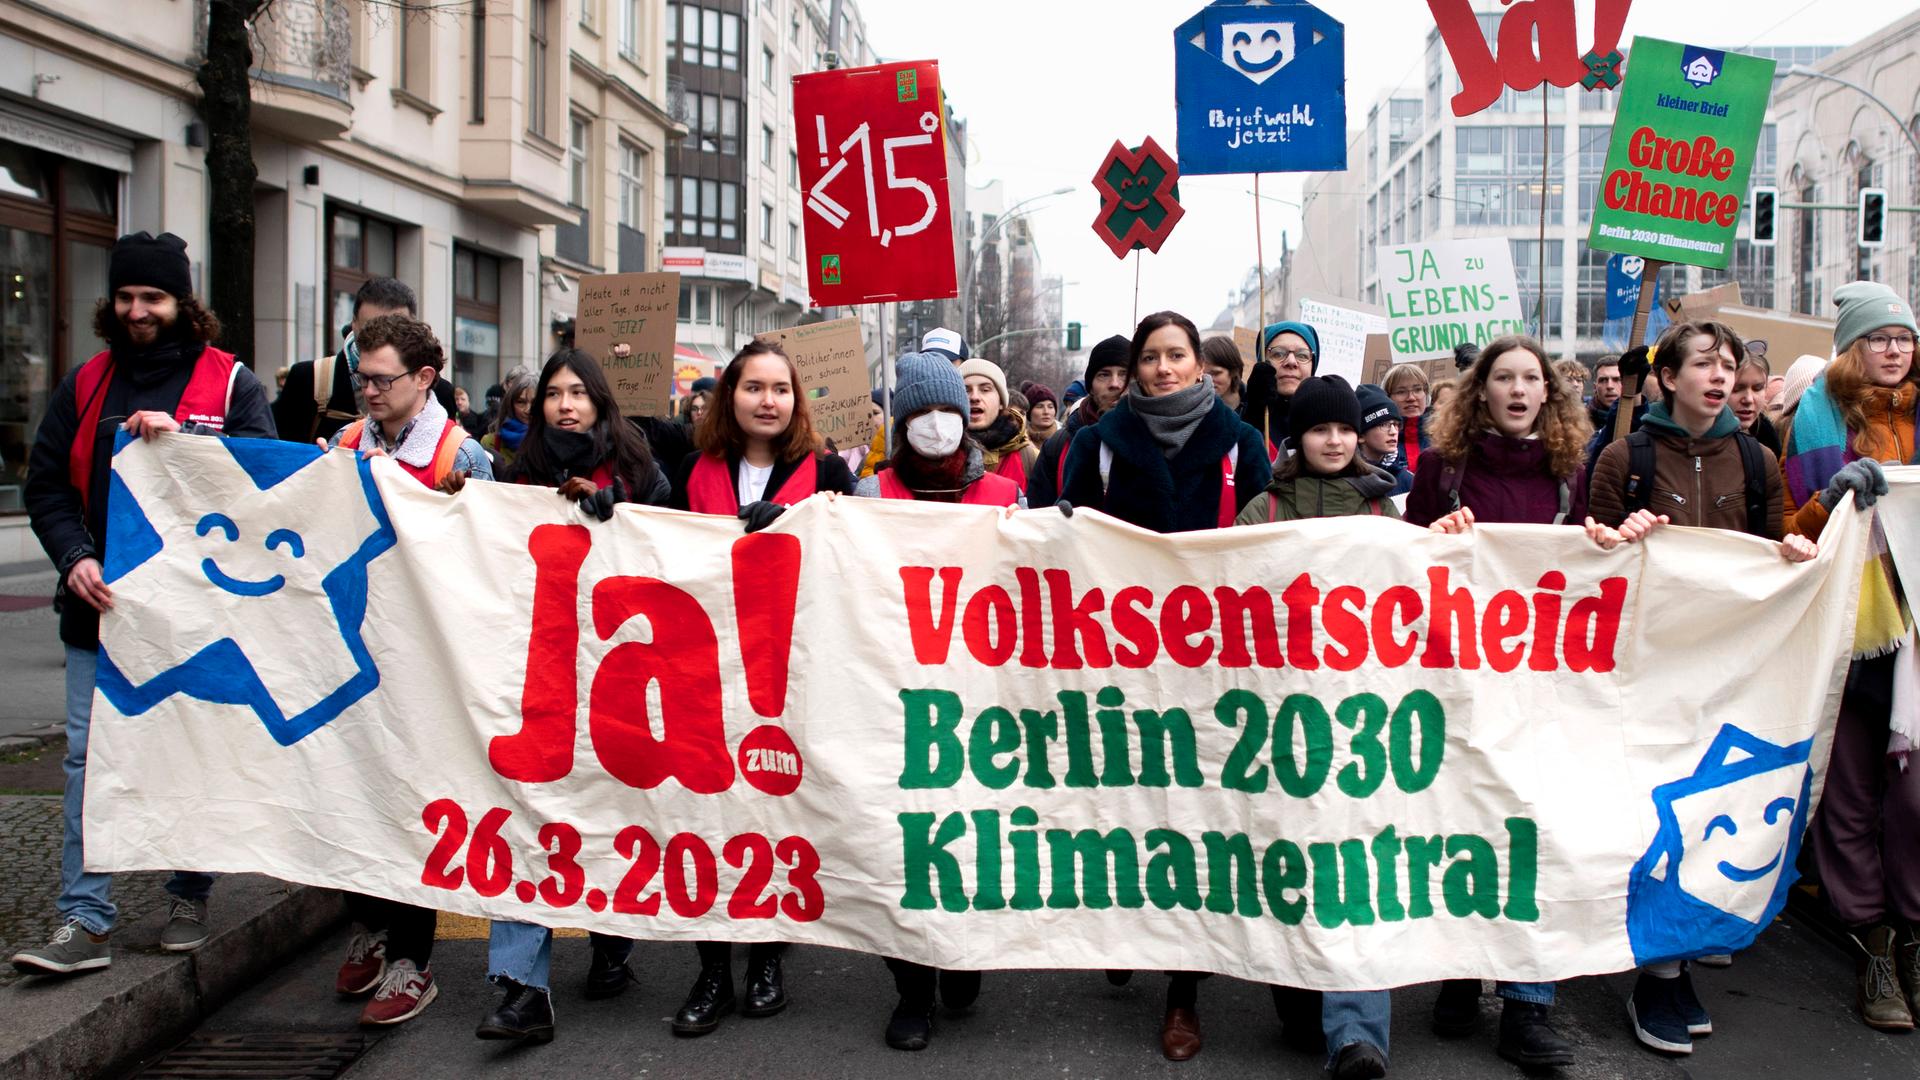 Umweltaktivistinnen und -aktivisten demonstrieren in Berlin für mehr Klimaschutz. Auf einem Transparent fordern sie die Bevölkerung auf, beim Volksentscheid "Berlin 2030 klimaneutral" für "Ja" zu stimmen.